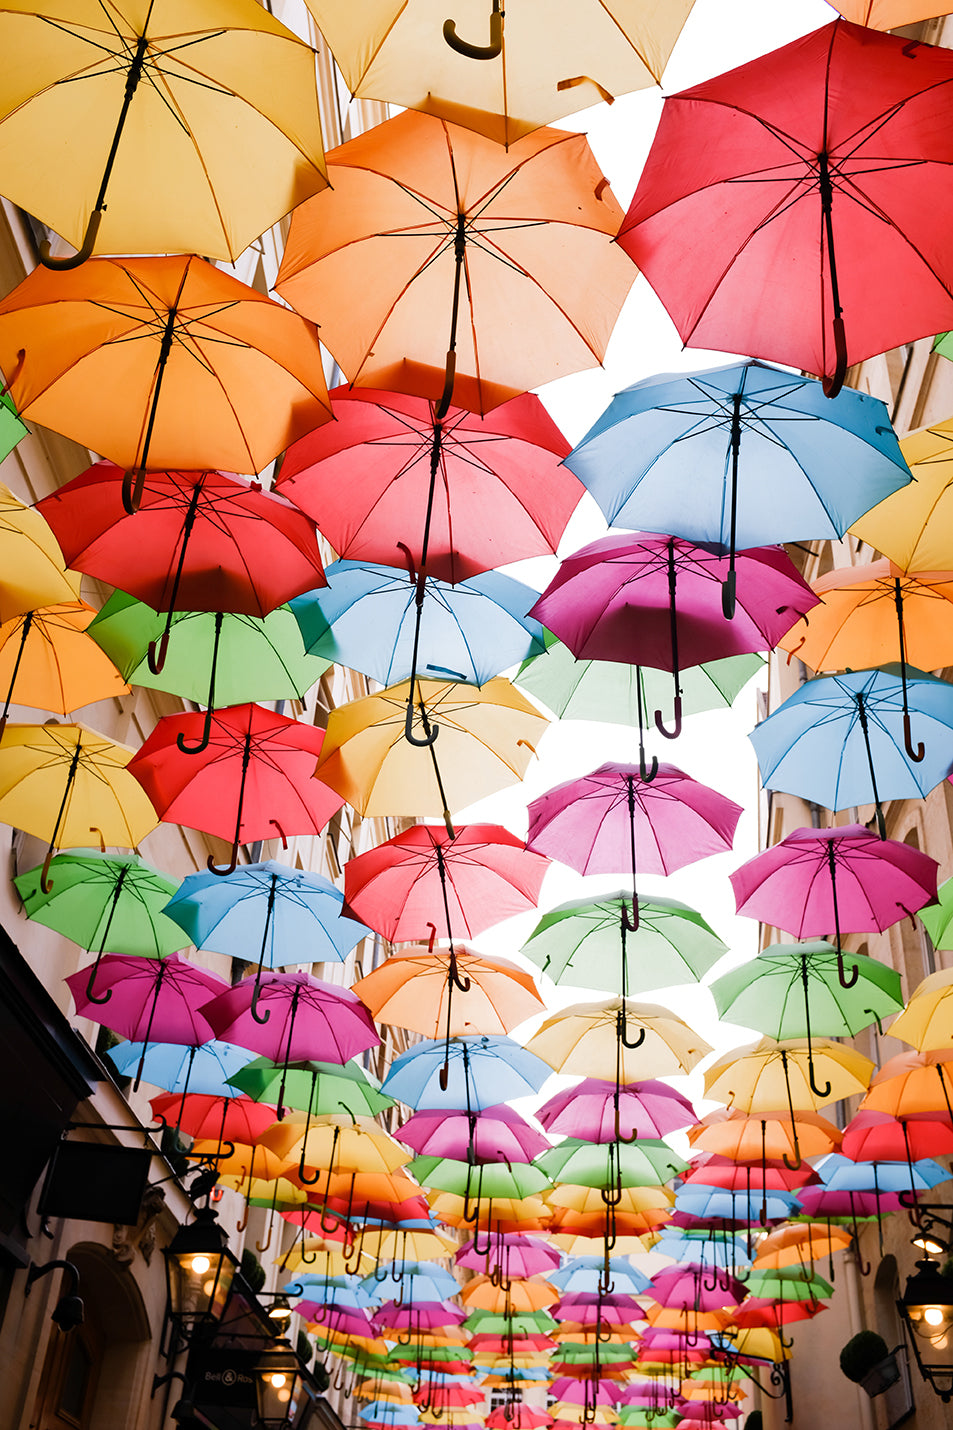 Colorful Umbrellas in Paris